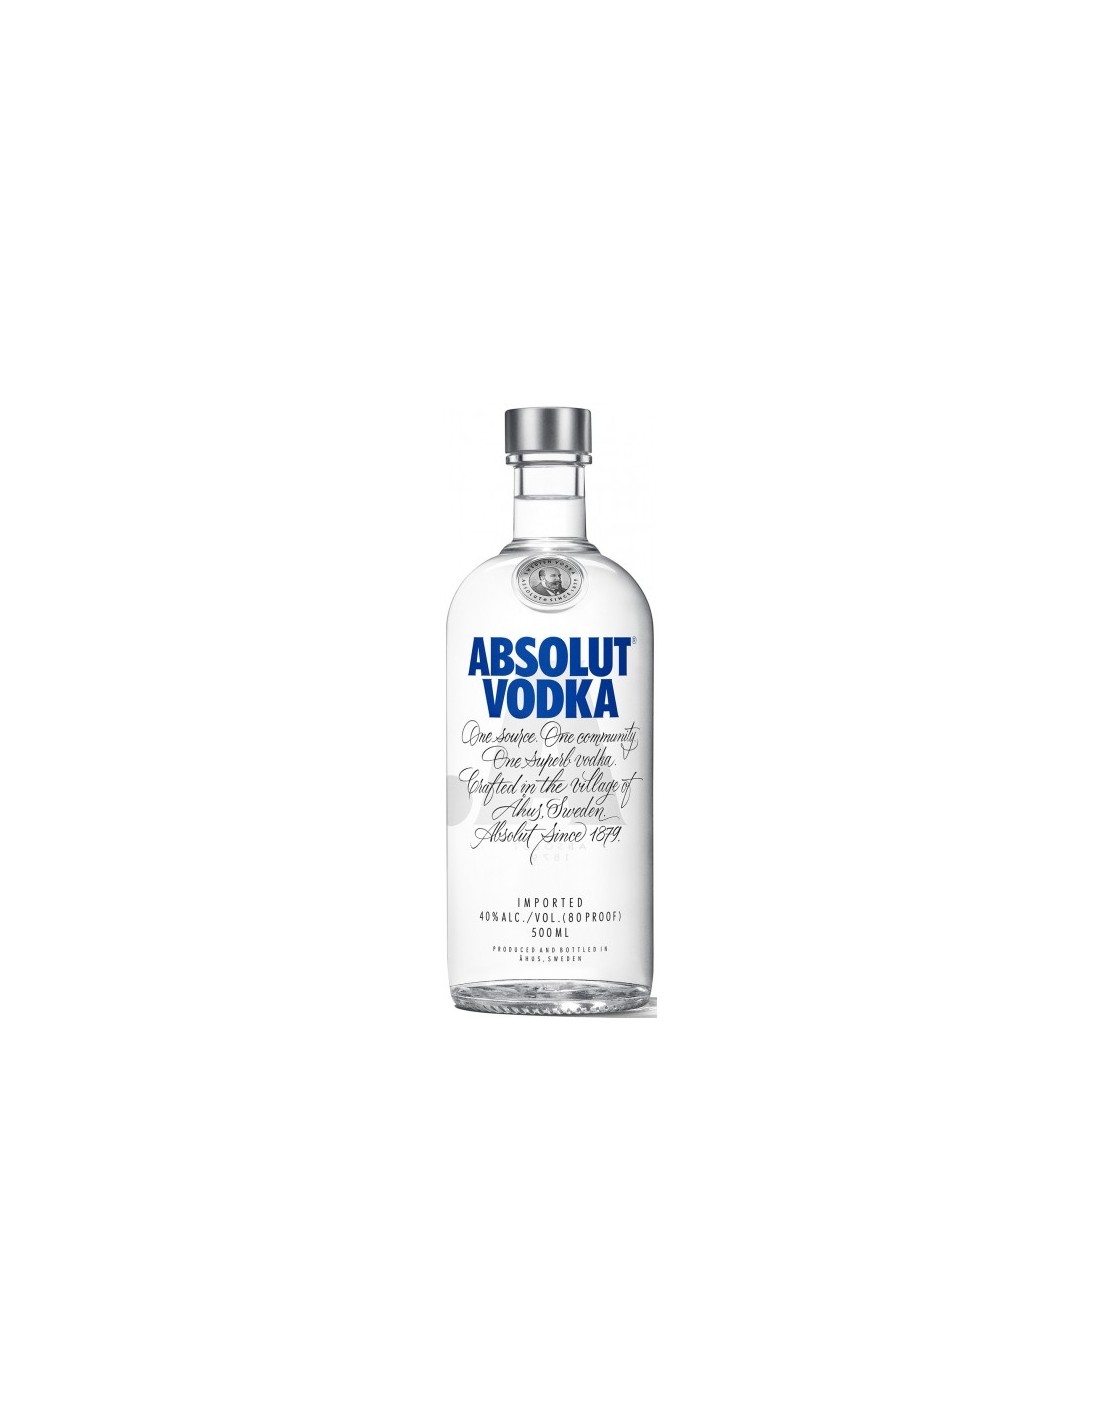 Vodca Absolut Blue 0.5L, 40% alc., Suedia alcooldiscount.ro